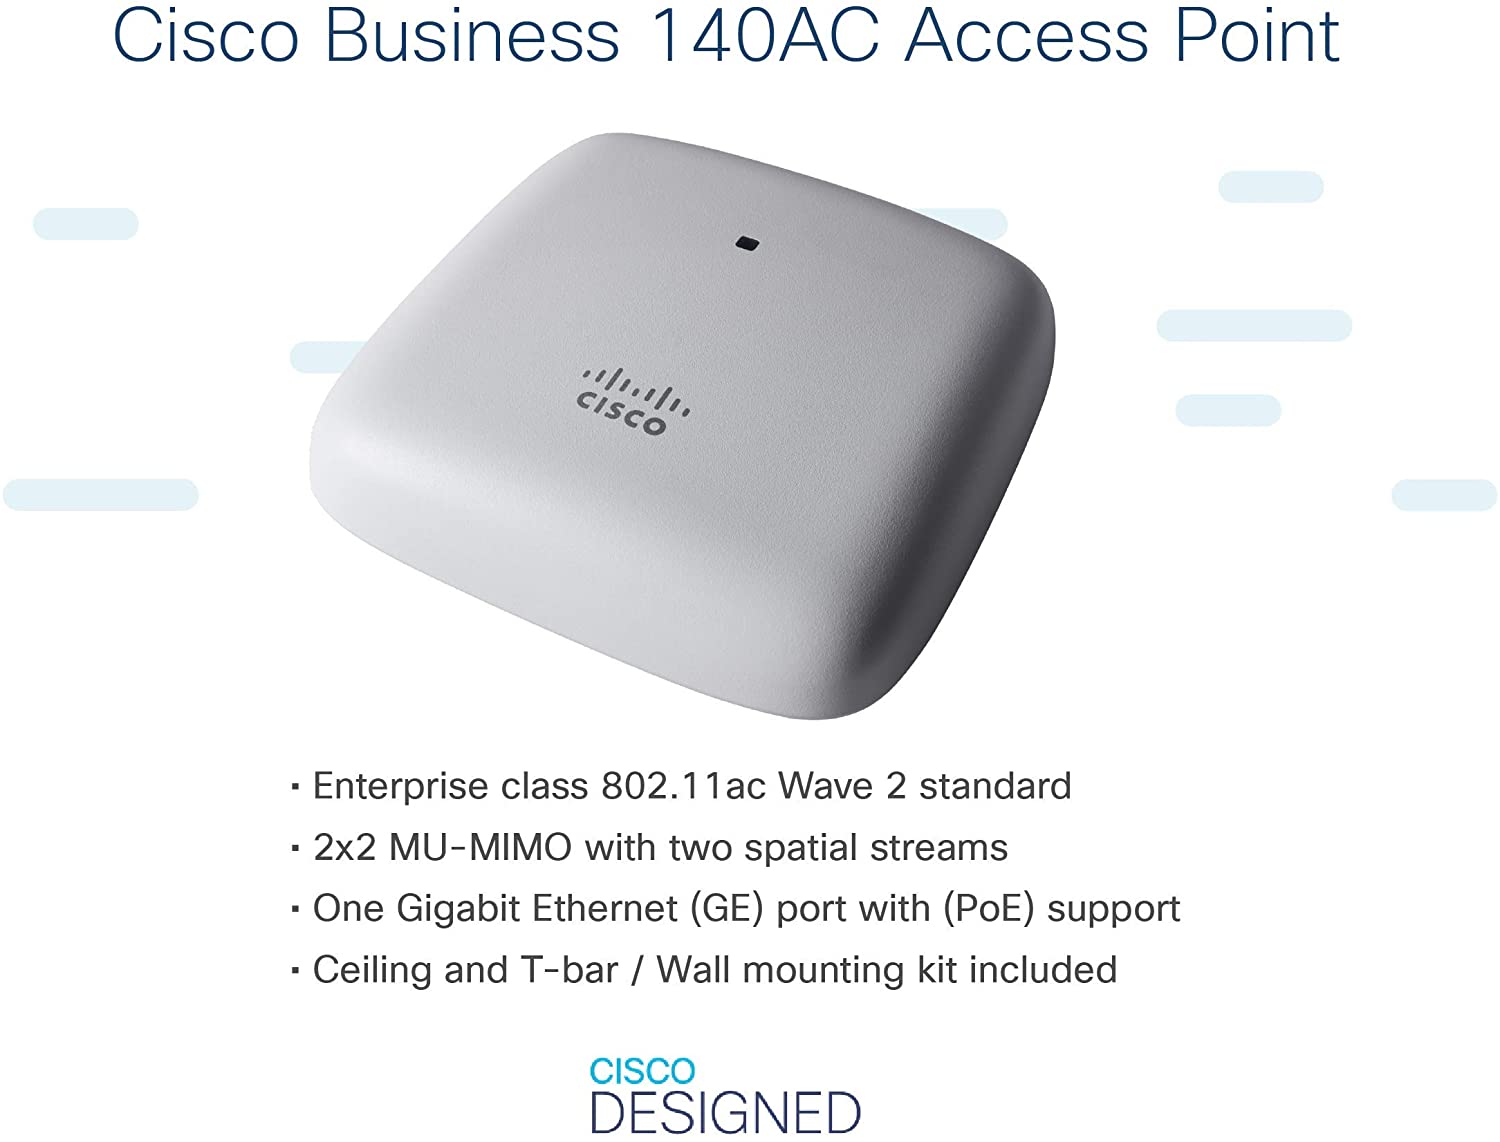 Cisco Business 140AC 802.11ac 2x2 Wave 2 Access Point 1 GbE-Port – Deckenmontage, eingeschränkter Schutz während der Lebensdauer (CBW140AC-E) 867 Mbit/s/Decke oder Wand/1GE-Port/Einzelpaket